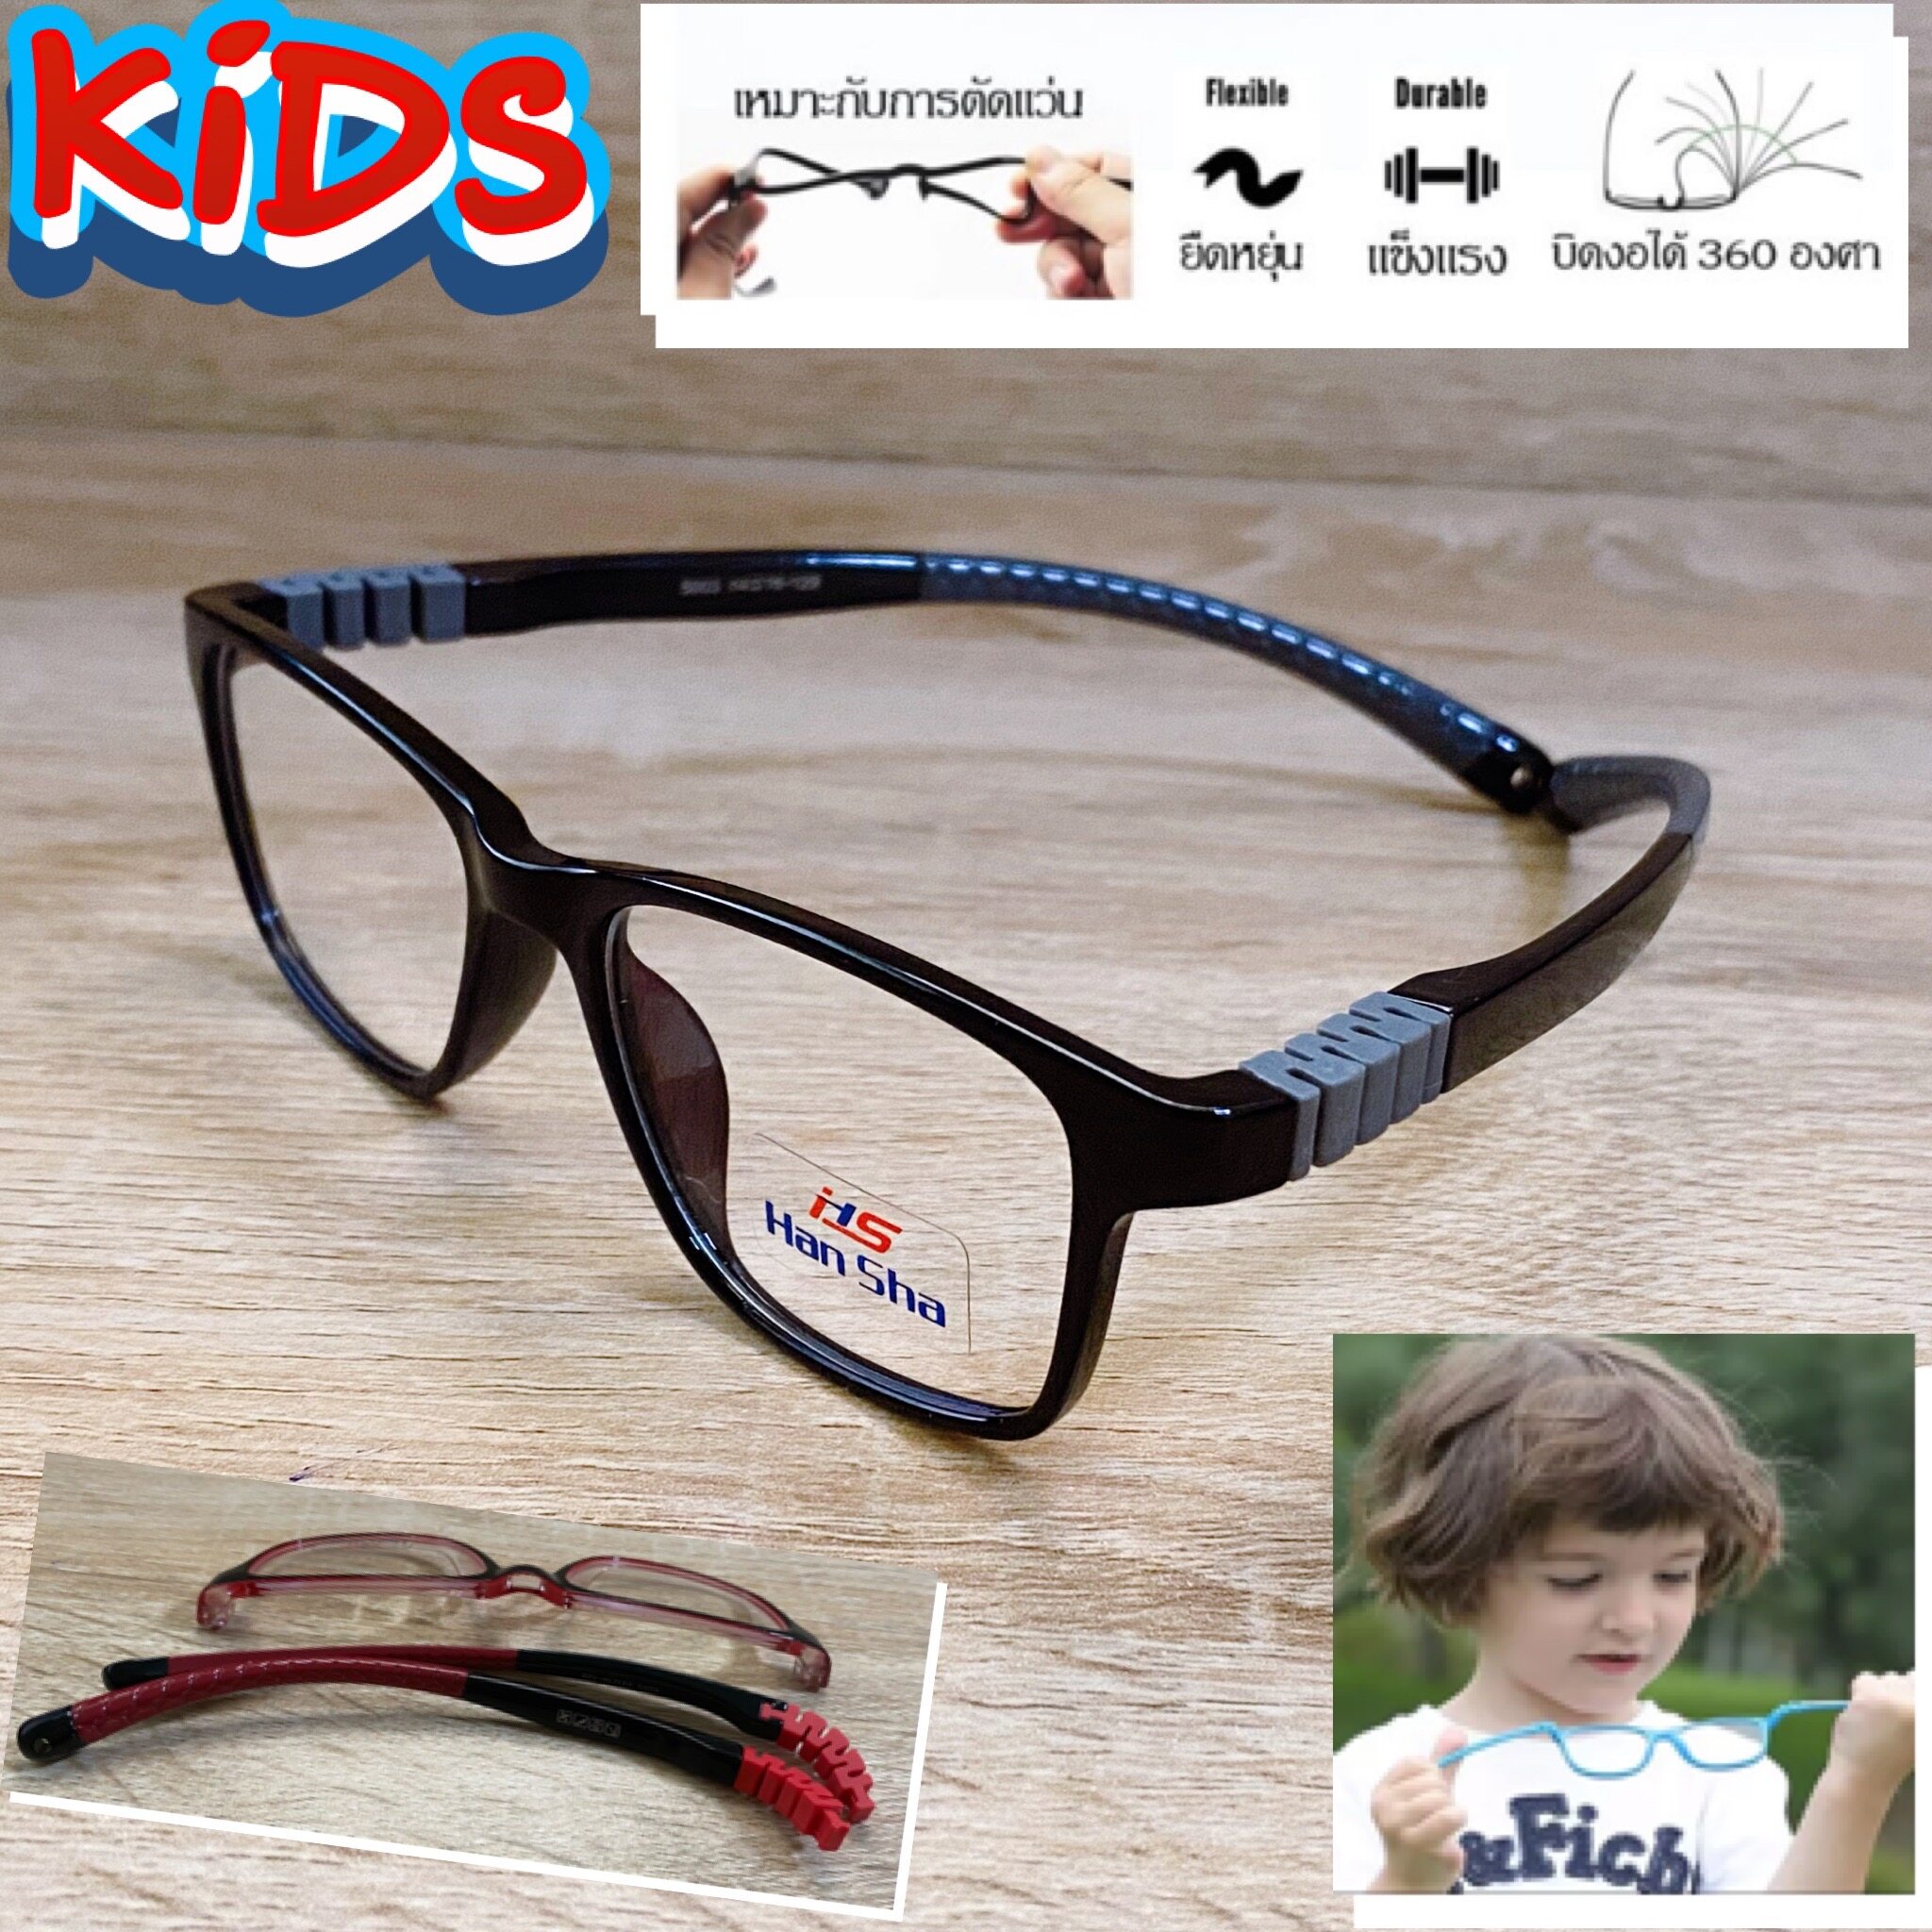 แว่นตาเด็ก กรอบแว่นตาเด็ก สำหรับตัดเลนส์ แว่นตา Han Sha รุ่น 5003 สีดำตัดเทา ขาไม่ใช้น็อต ยืดหยุ่น ถอดขาเปลี่ยนได้ วัสดุ TR 90 เบา ไม่แตกหัก